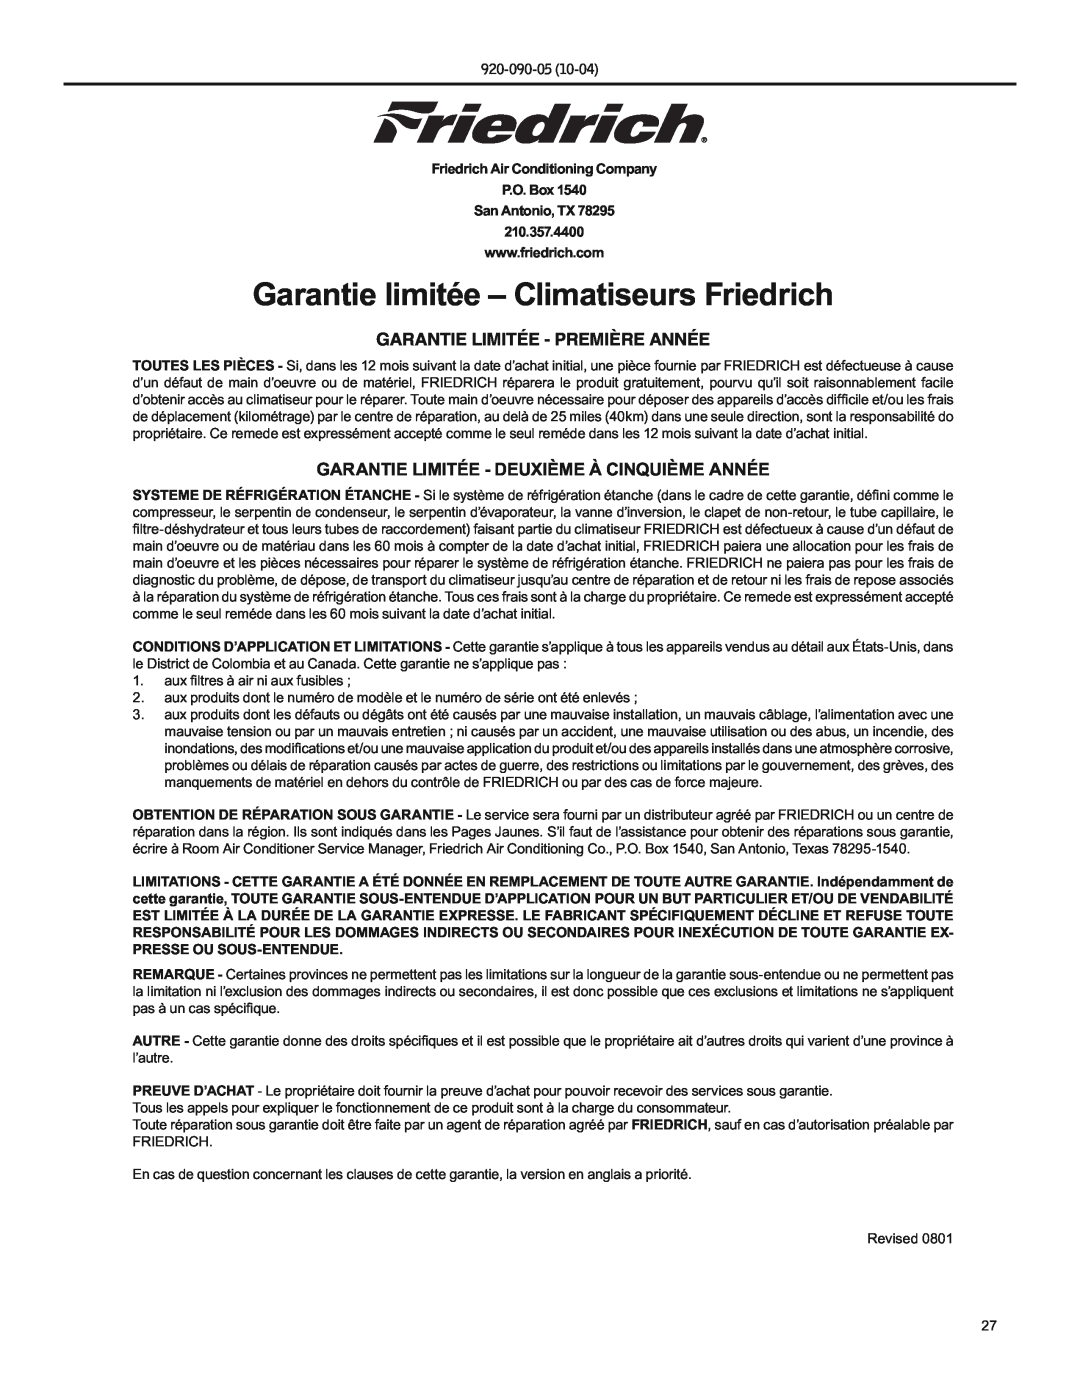 Friedrich SS09 Garantie limitée - Climatiseurs Friedrich, Garantie Limitée - Première Année, 920-090-05, 210.357.4400 